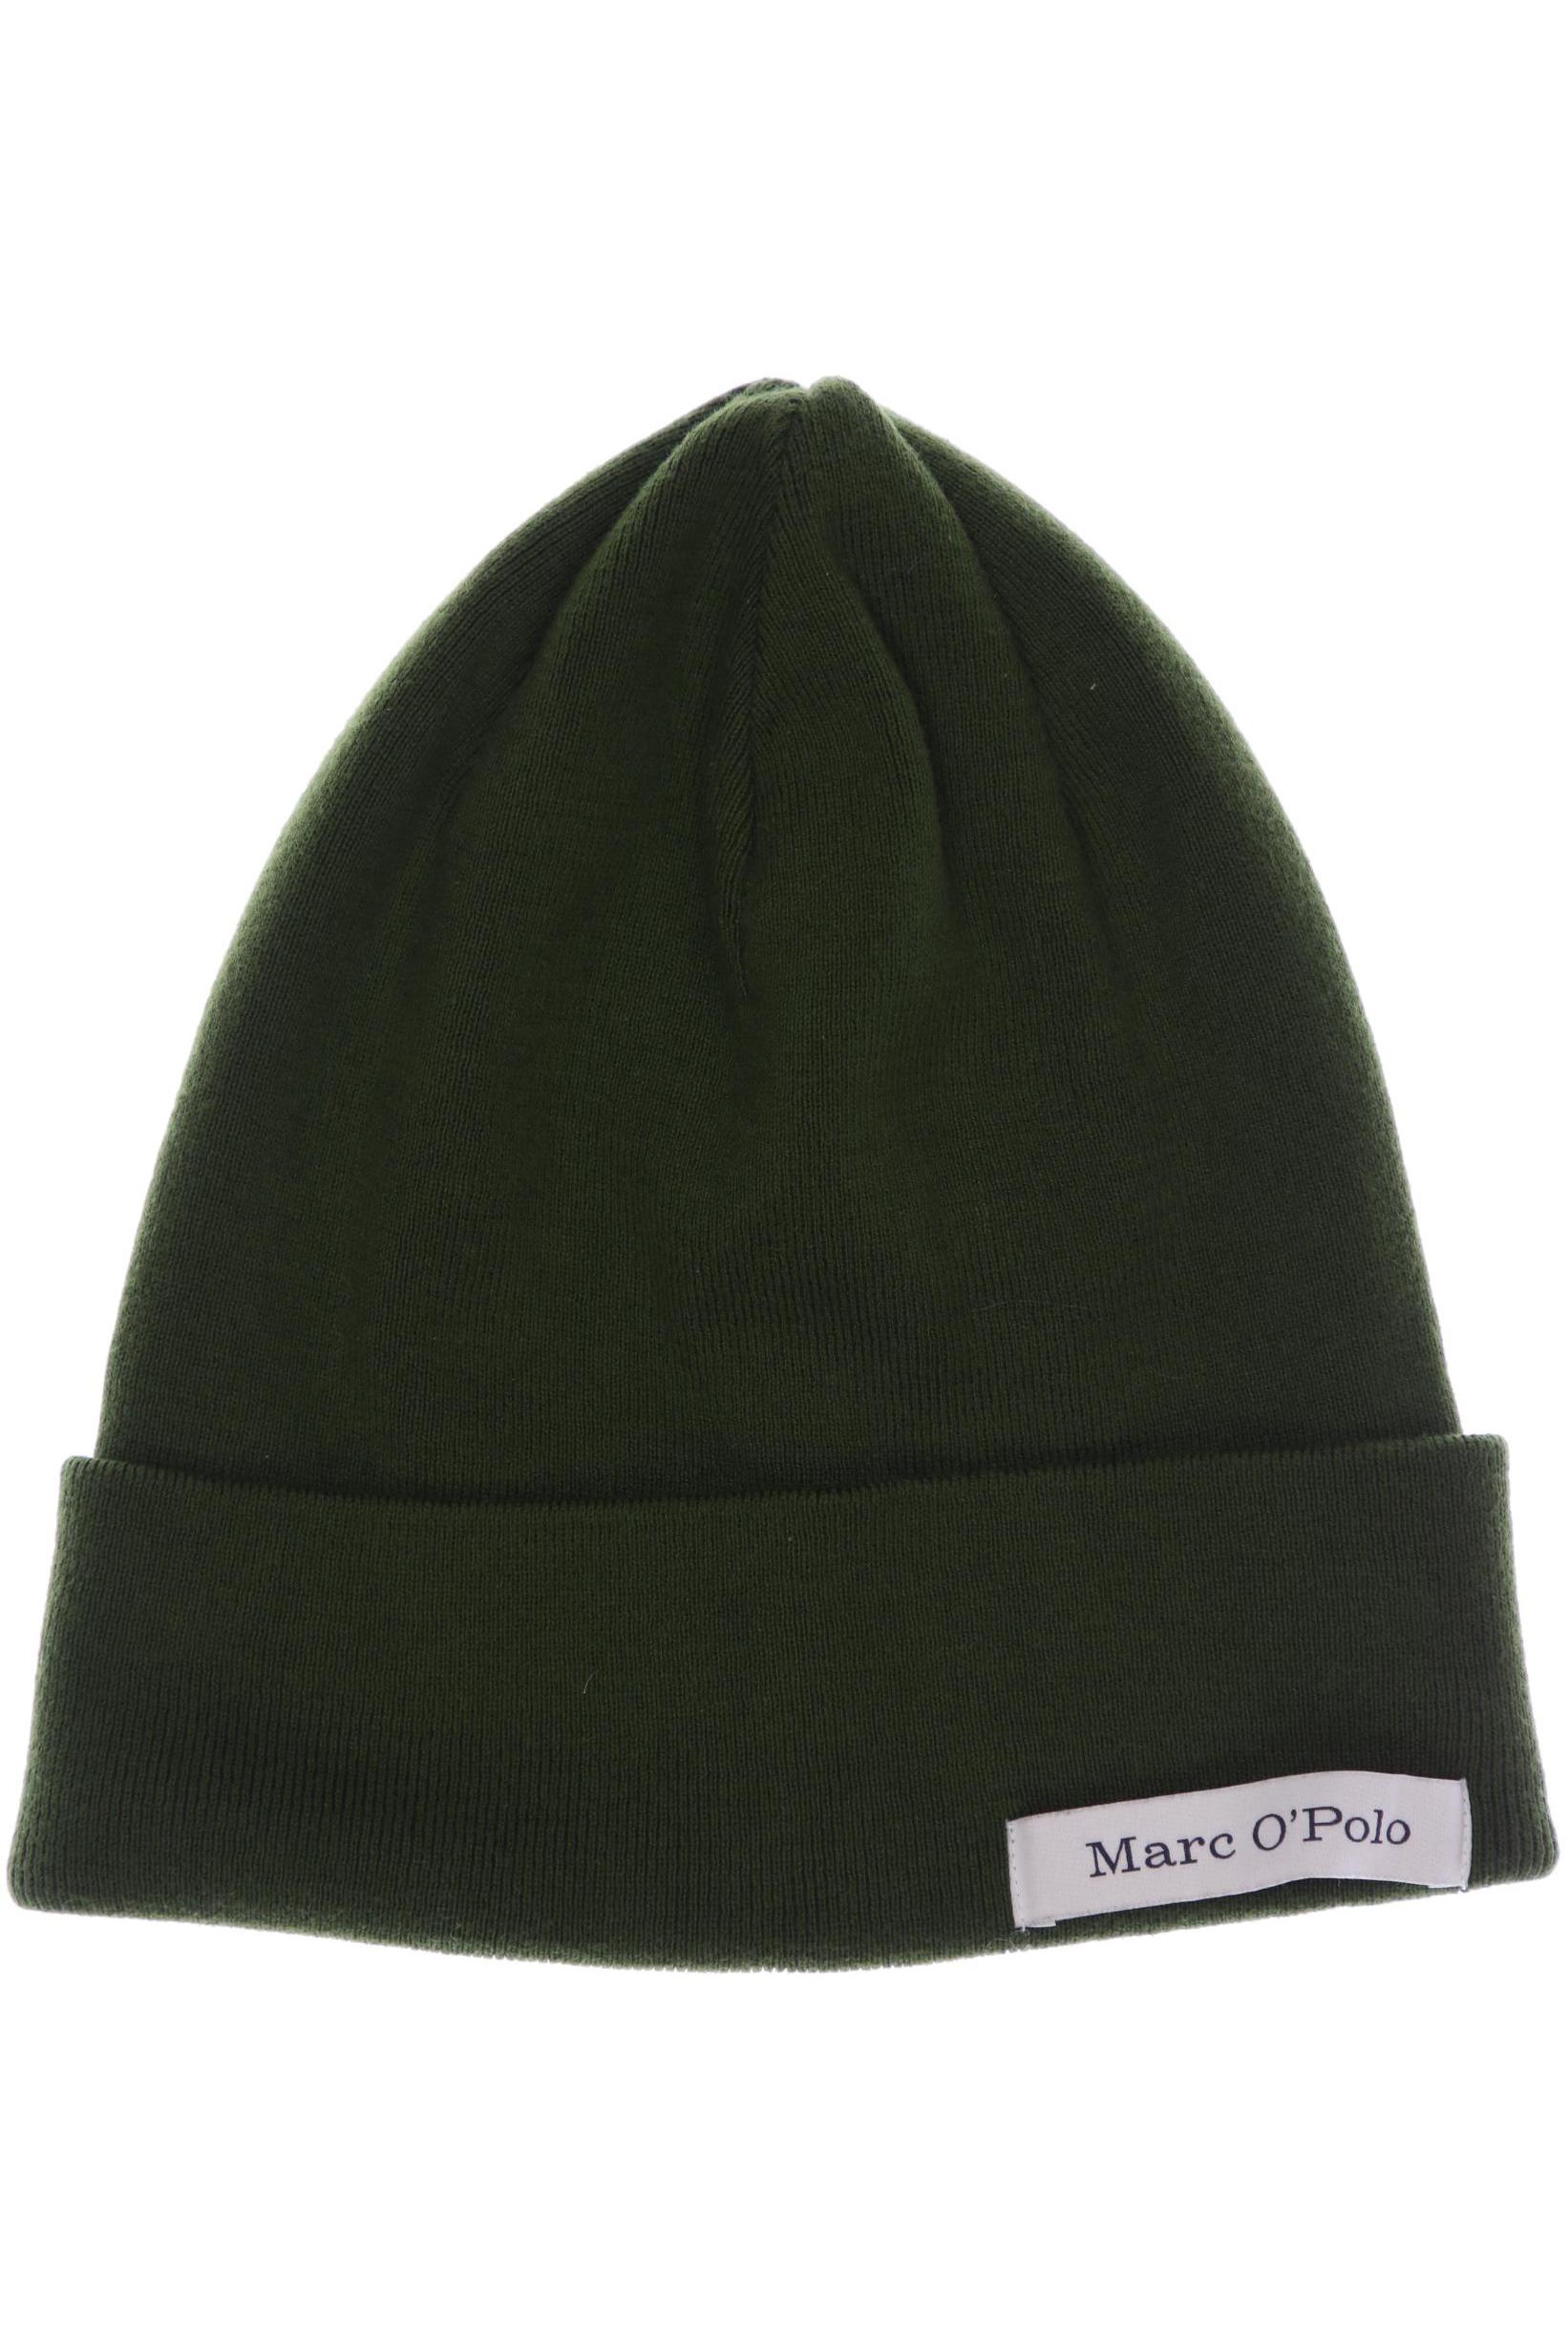 Marc O Polo Damen Hut/Mütze, grün von Marc O Polo